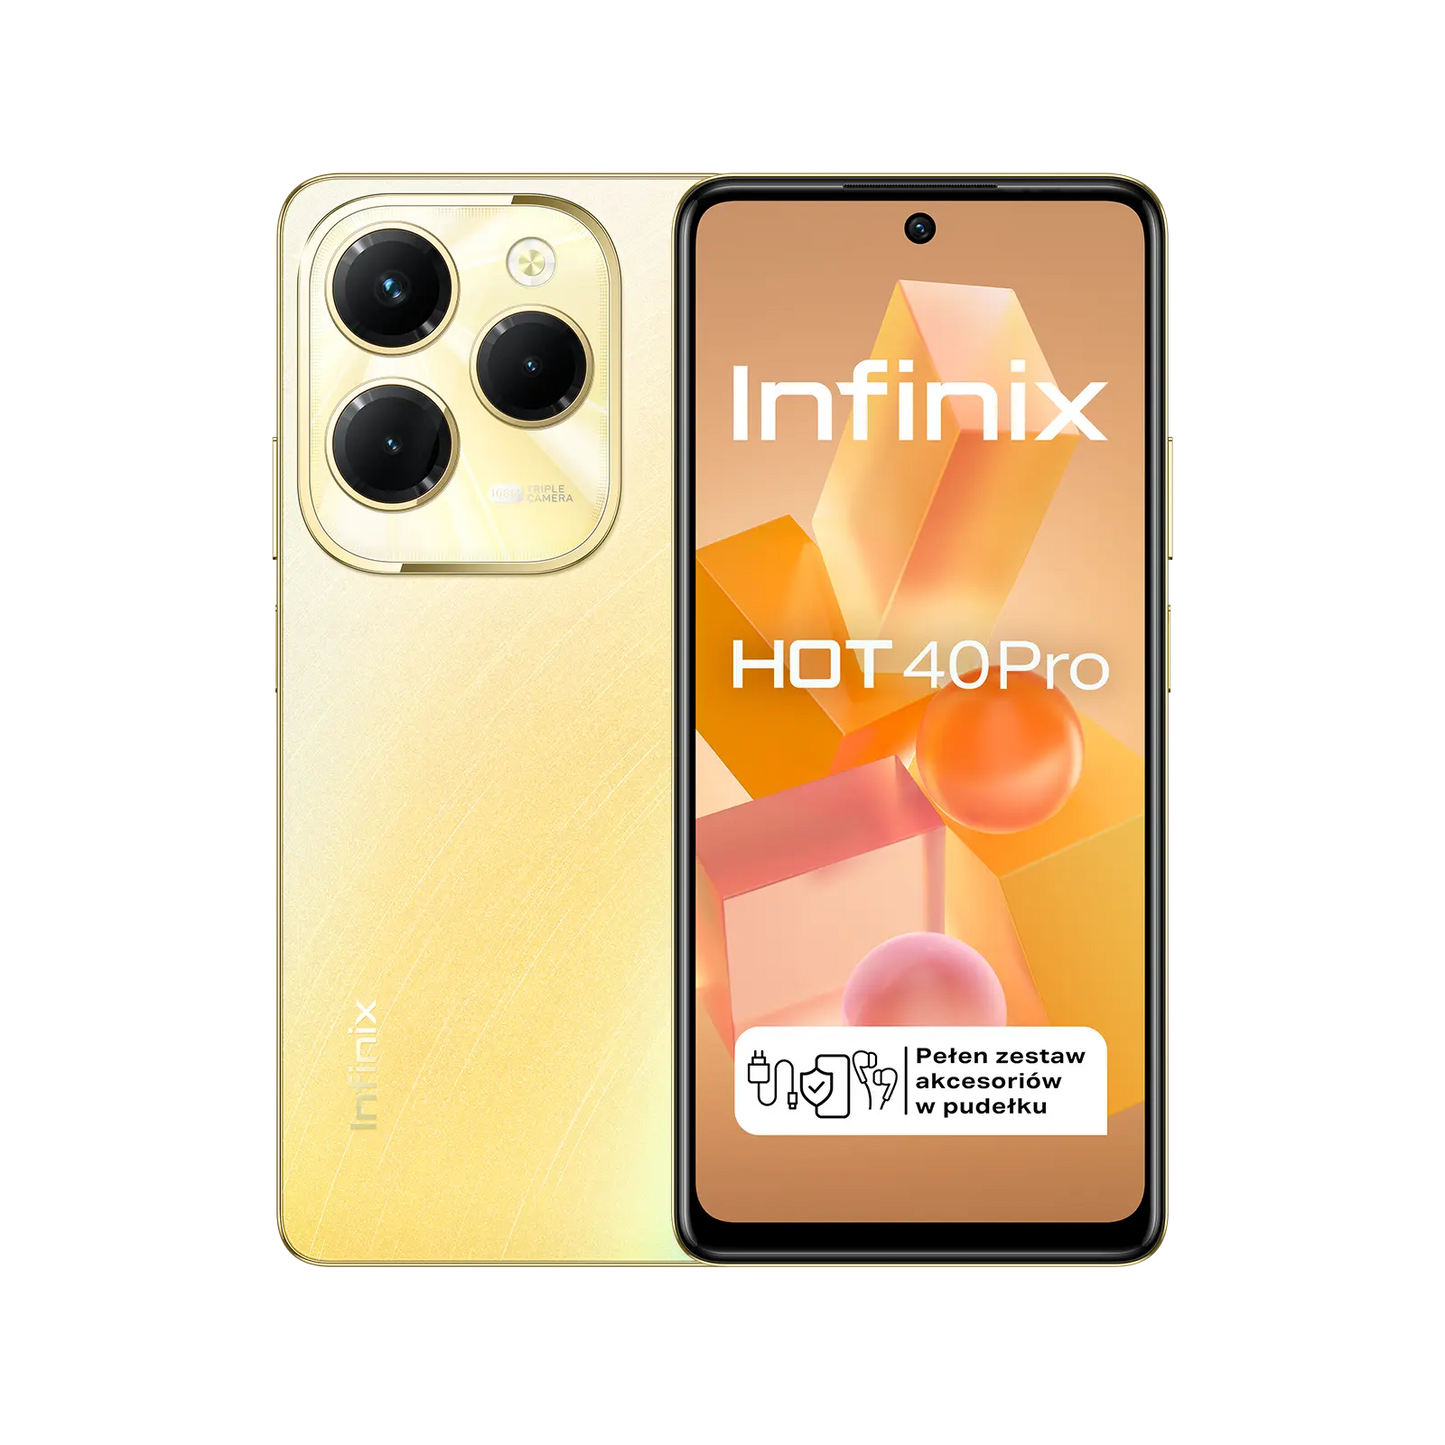 Infinix HOT 40 Pro od Infinix w SimplyBuy.pl